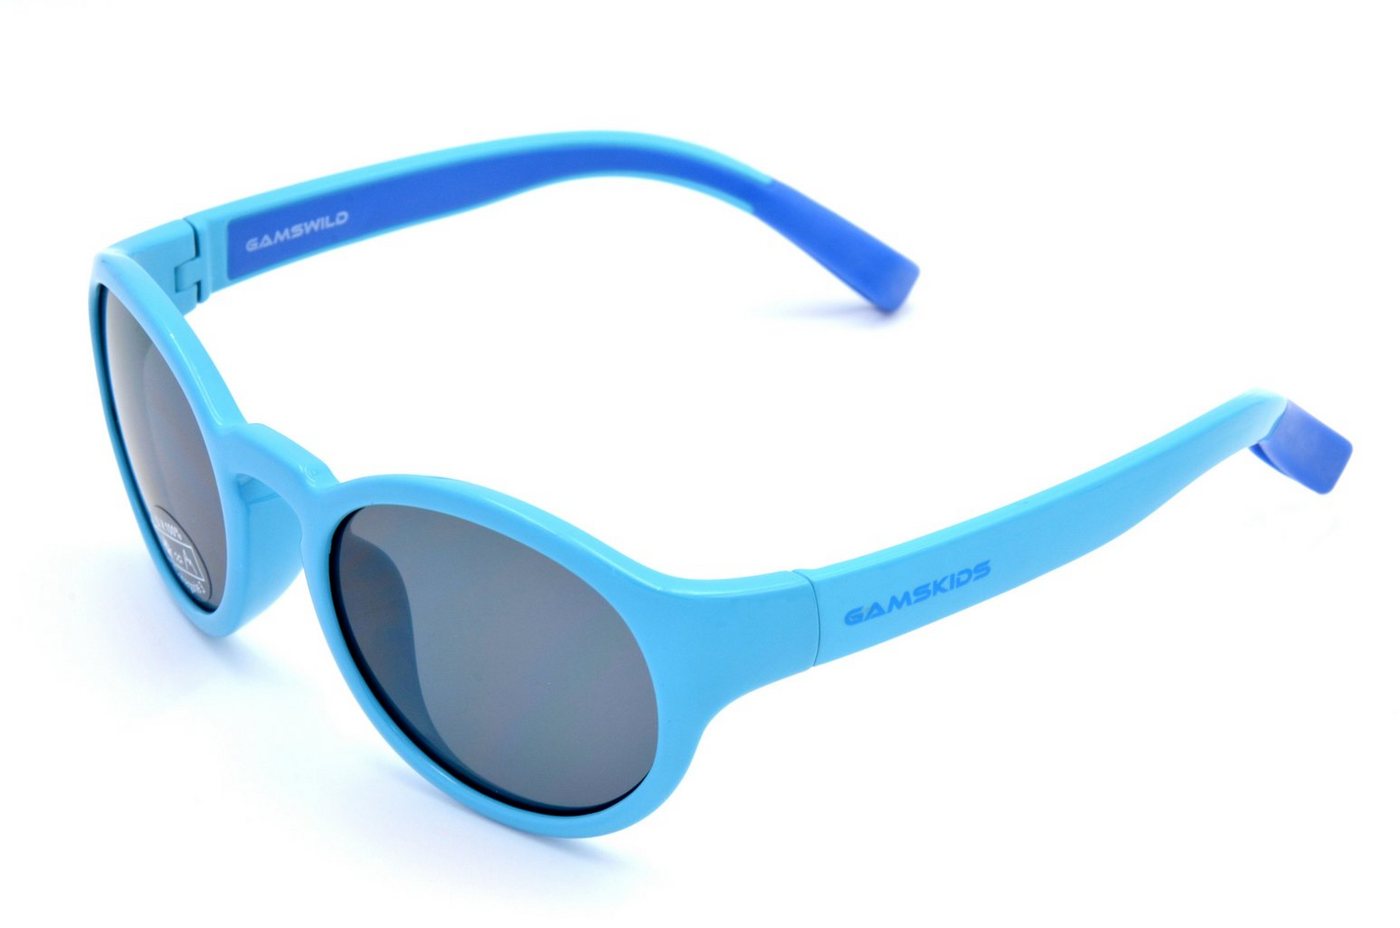 Gamswild Sonnenbrille UV400 GAMSKIDS Kinderbrille 5-10 Jahre Kleinkindbrille Mädchen Jungen kids Unisex Modell WK5417 in blau, grün, lila von Gamswild